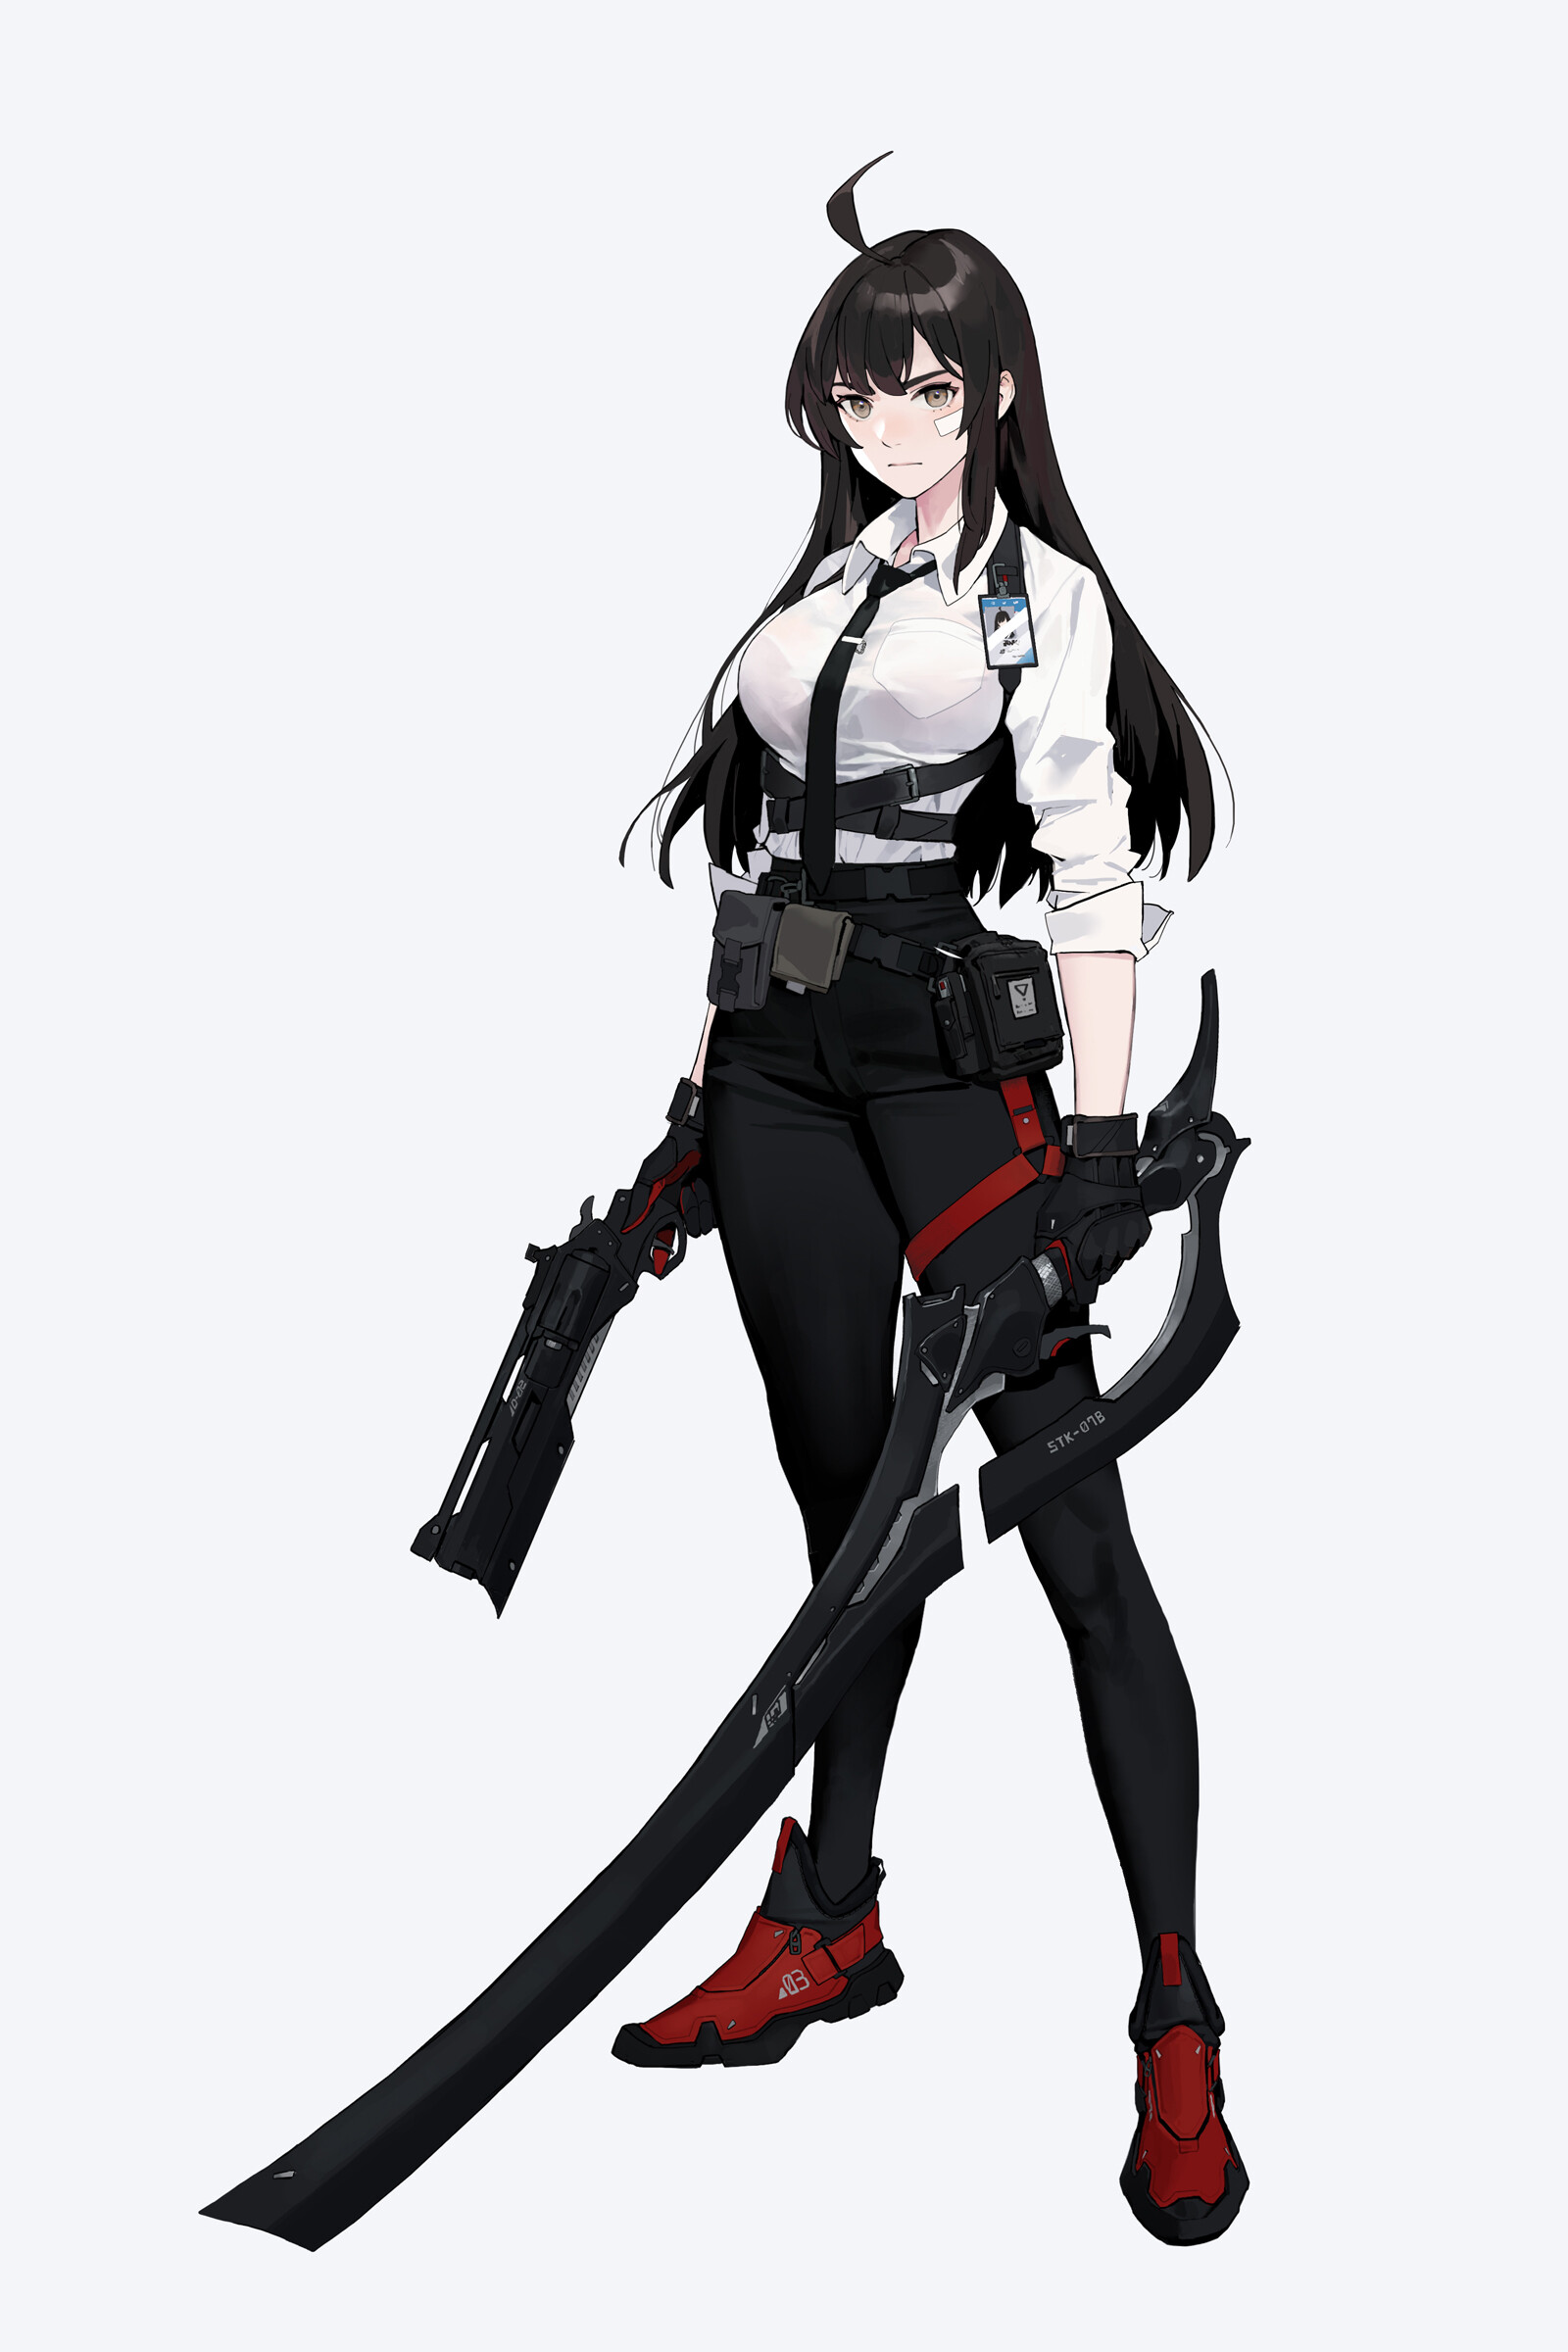 Anime 1600x2400 DHK drawing women dark hair long hair weapon gun blades holster shirt white background simple background minimalism Dongho Kang